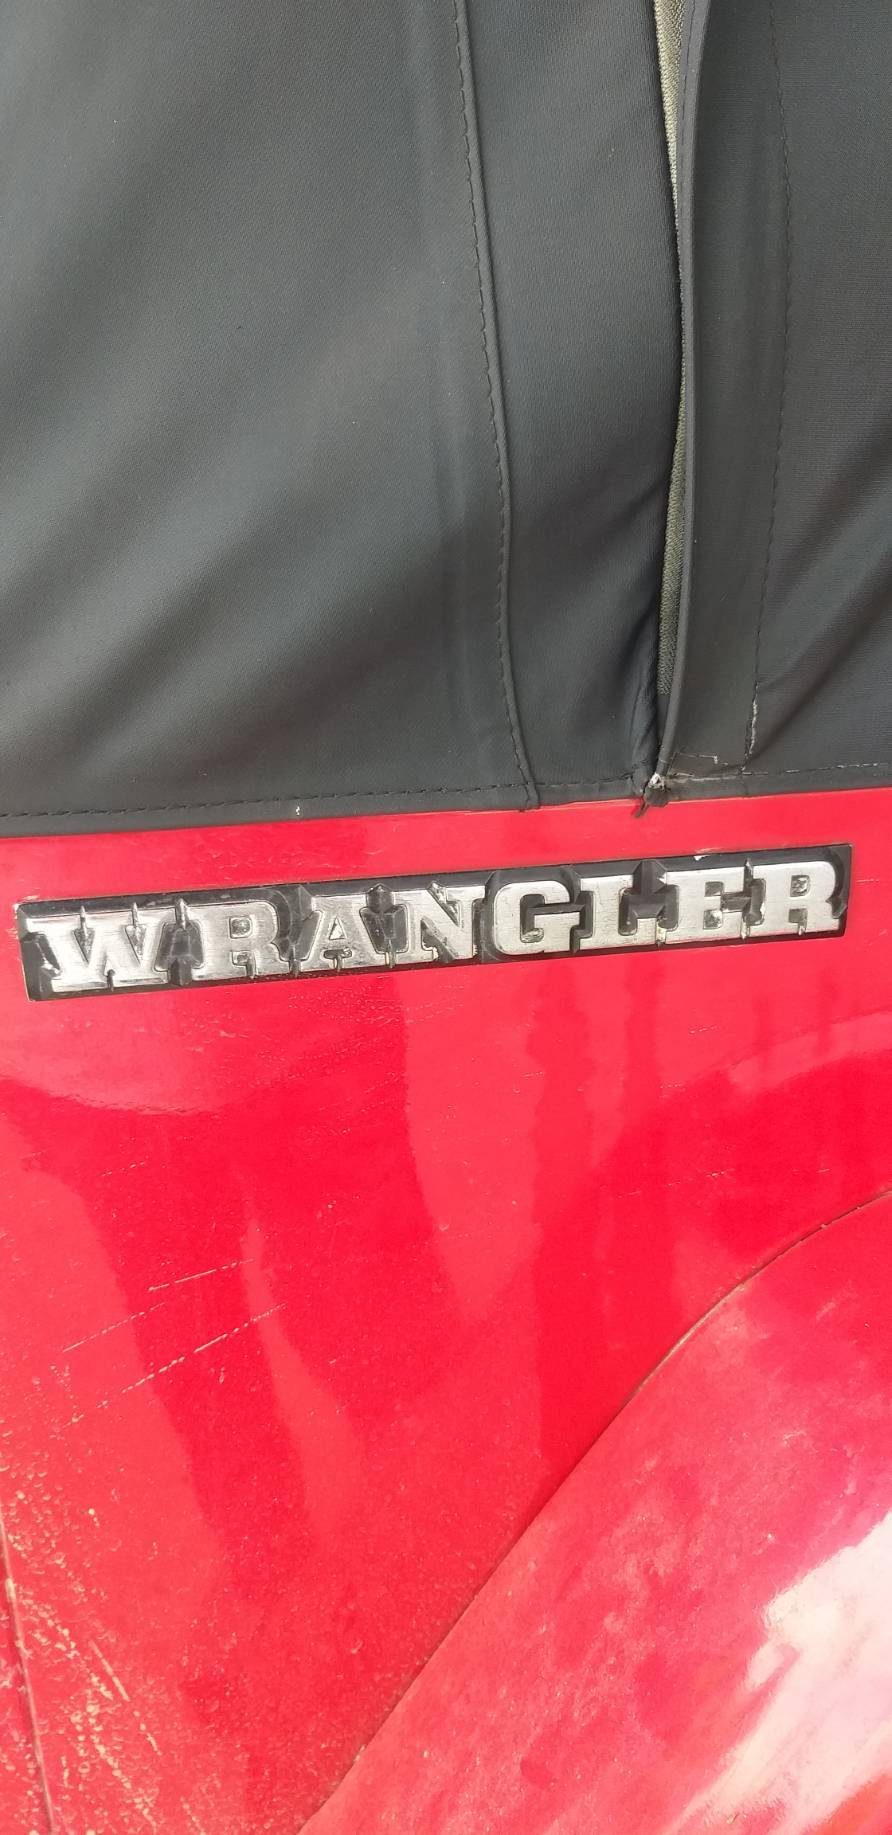 จำหน่ายของแต่ง jeep wrangler และ อะไหล่ใหม่ Jeep ทุกรุ่น ฯลฯ
